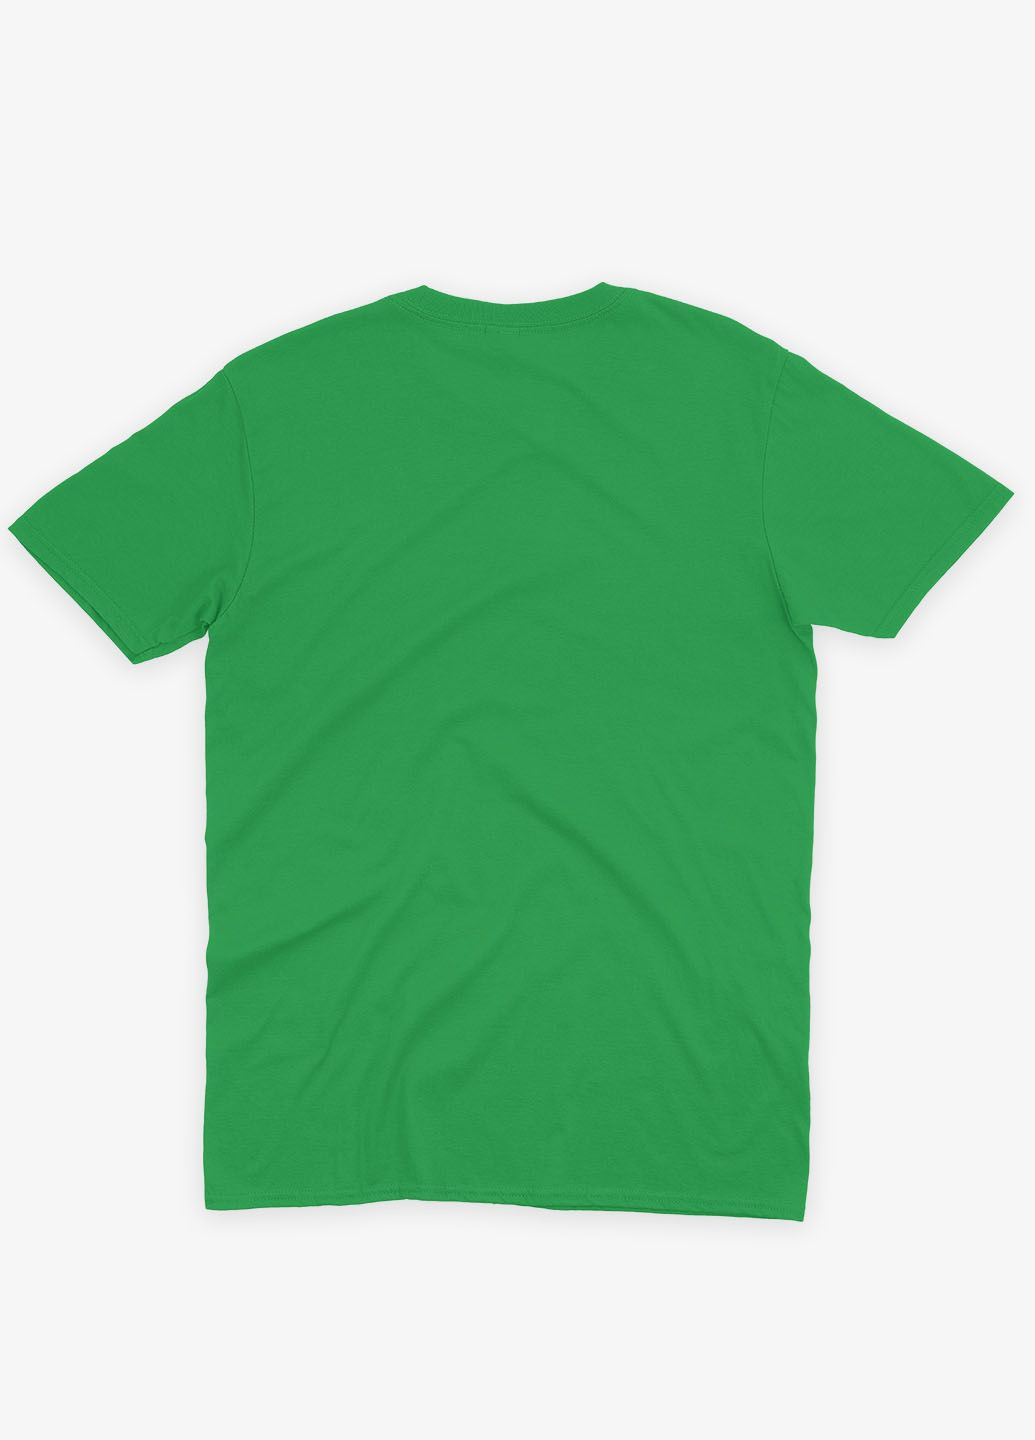 Зелена демісезонна футболка для хлопчика з принтом супергероя - капітан америка (ts001-1-keg-006-022-008-b) Modno